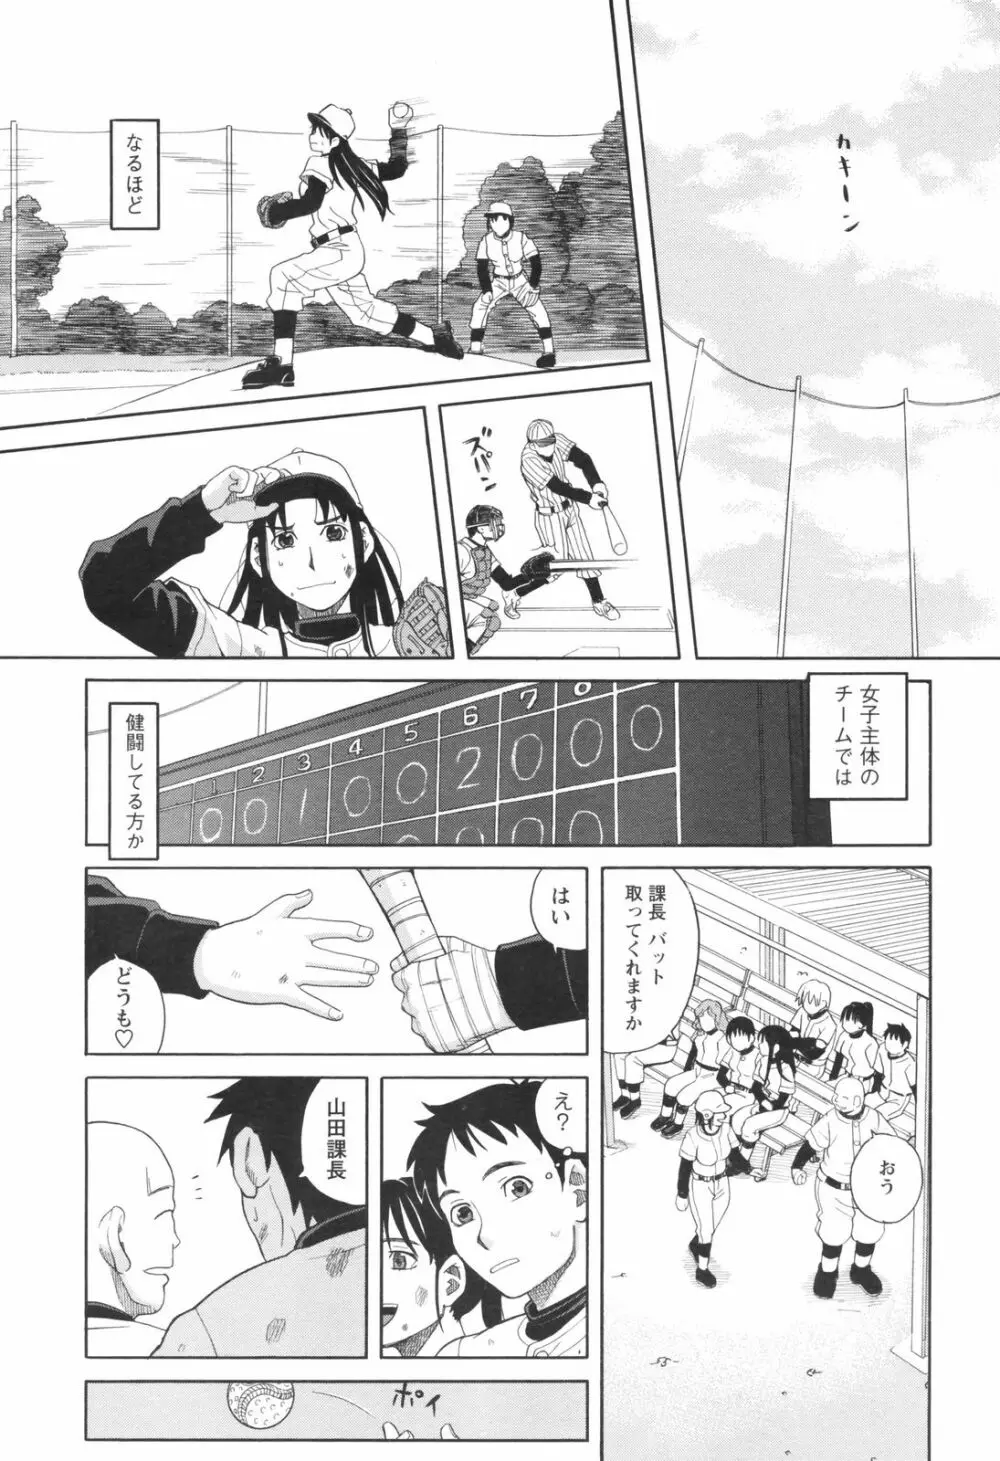 メンズヤングスペシャルIKAZUCHI雷 Vol.5 2008年3月号増刊 35ページ